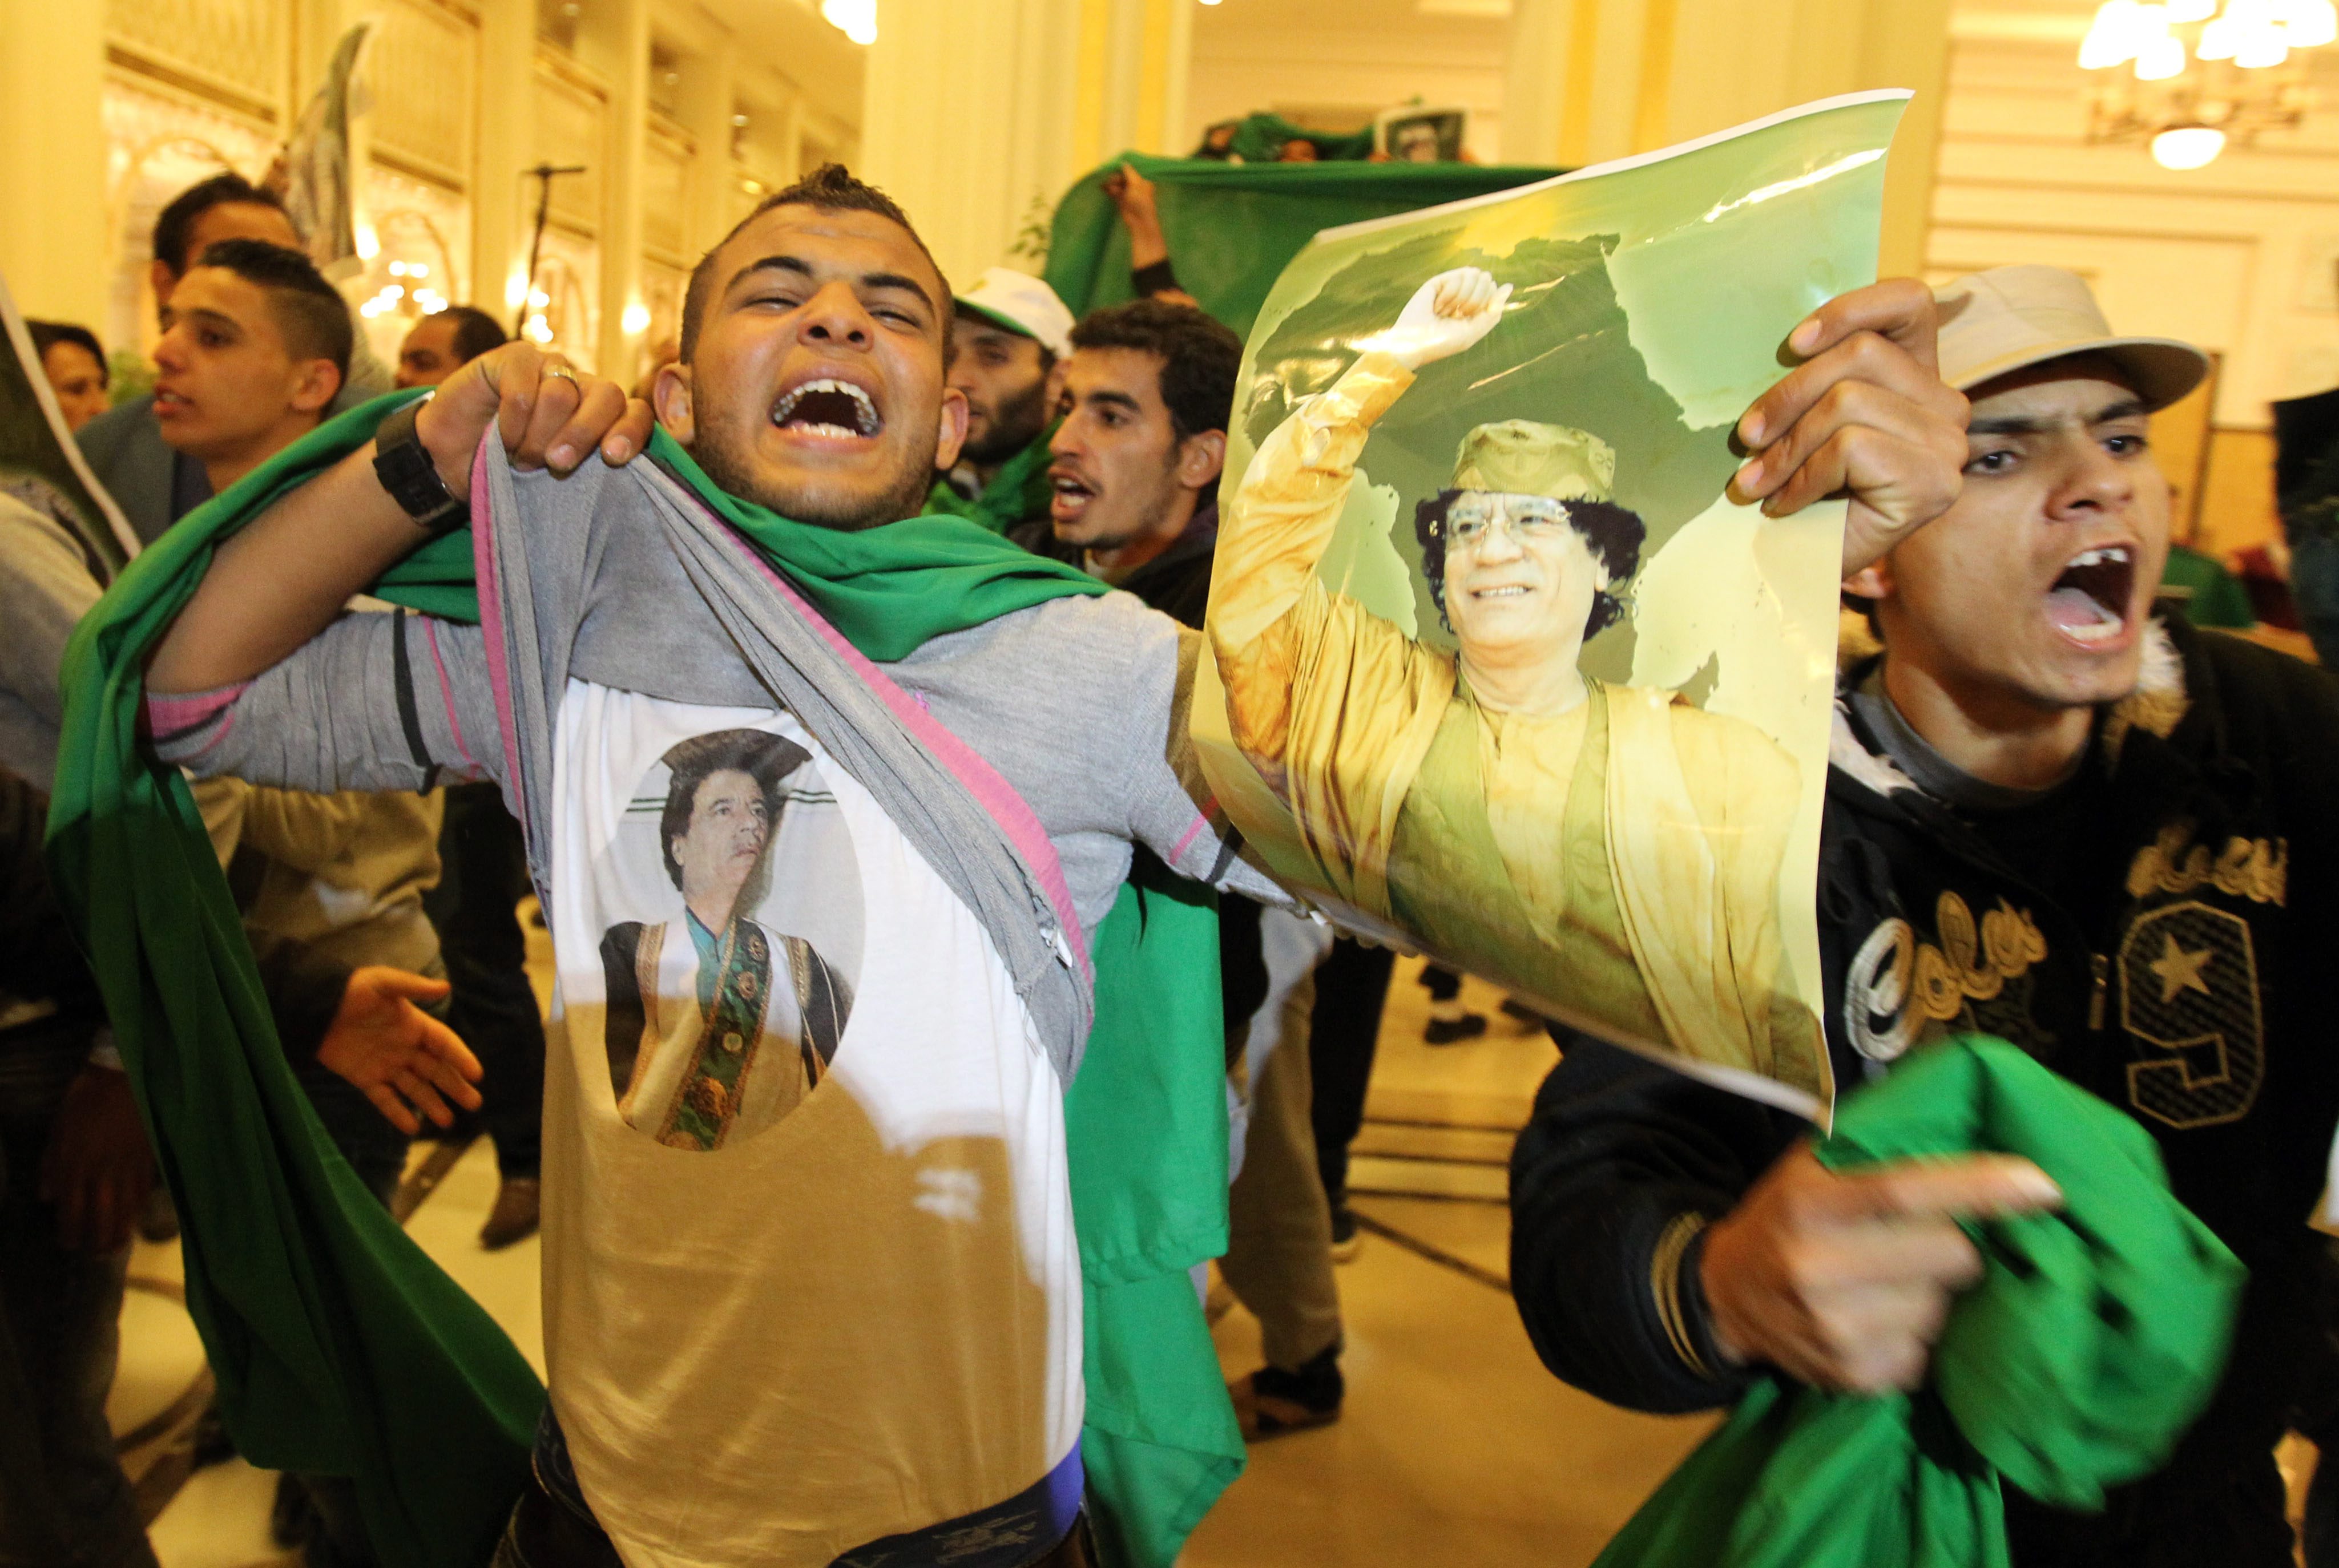 Репортерите бяха похитени от привърженици на Муамар Кадафи